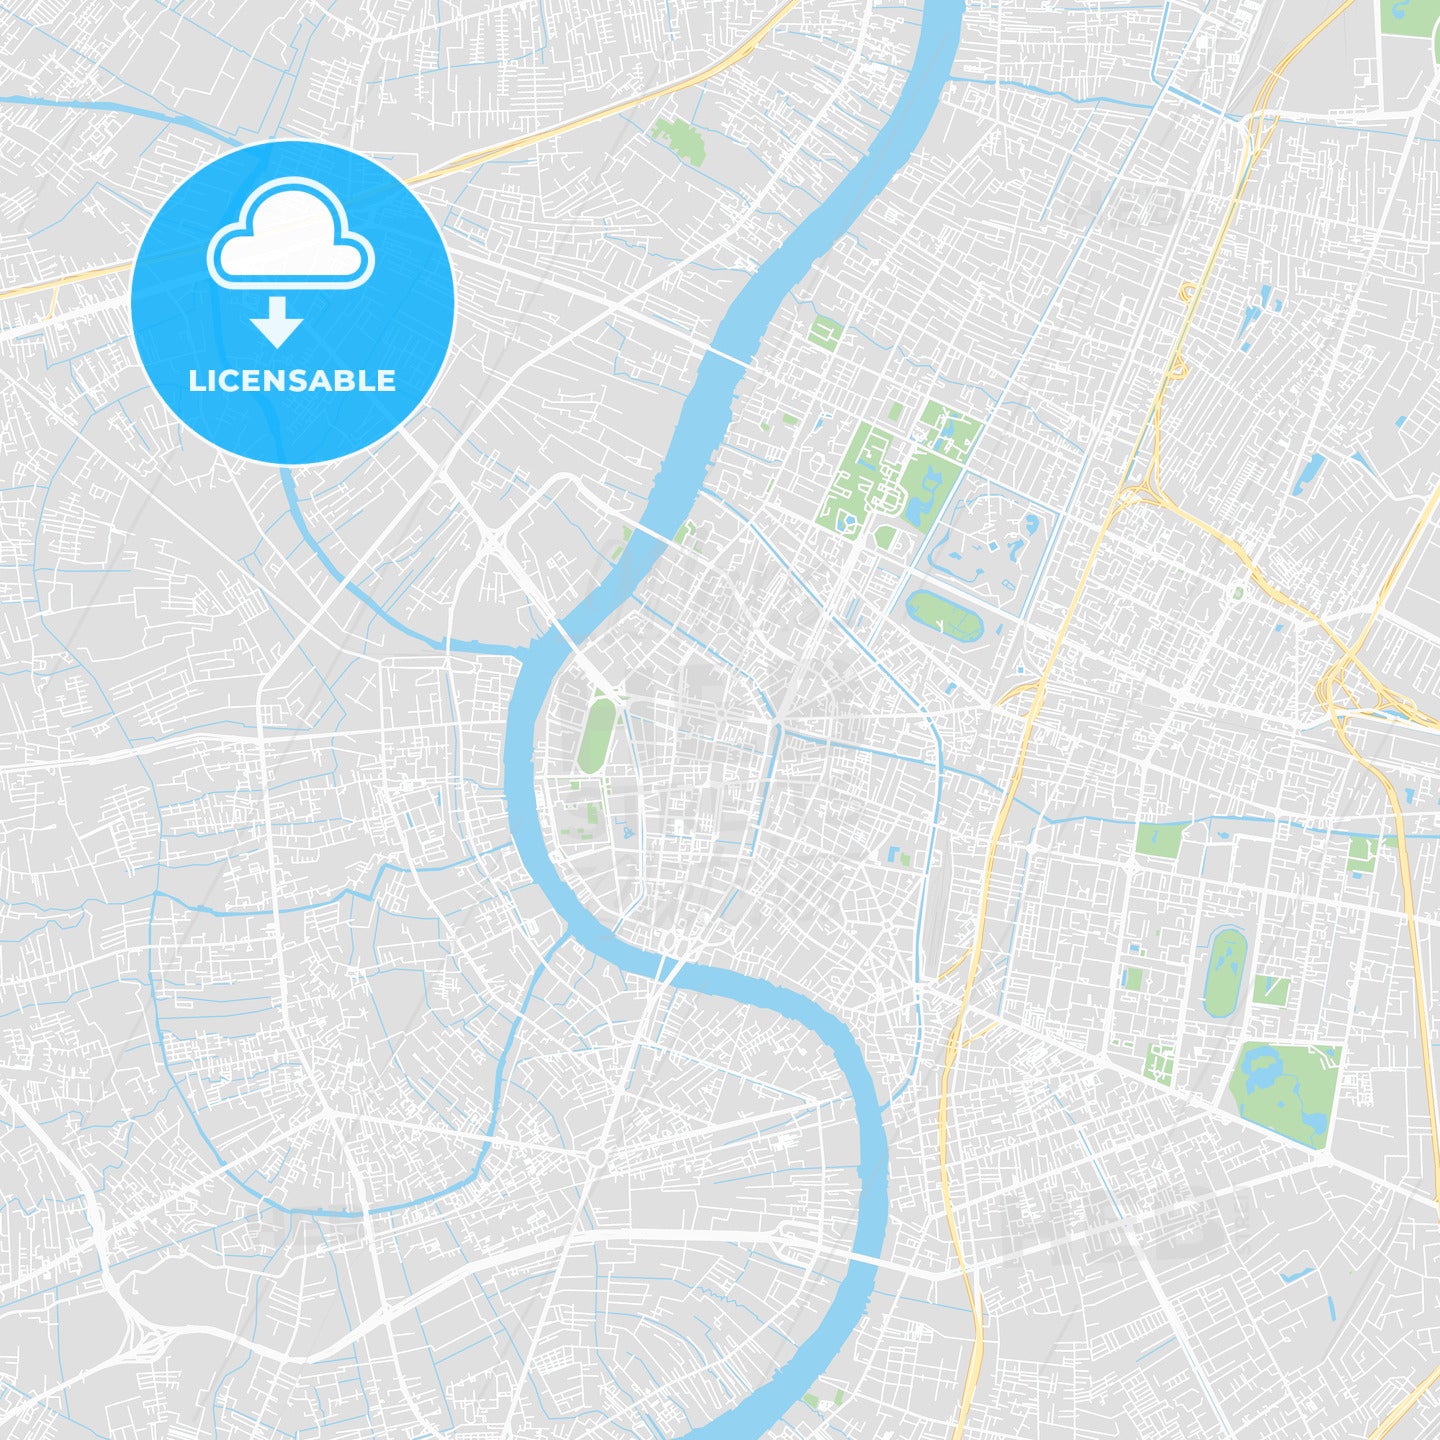 Printable map of Bangkok, Thailand